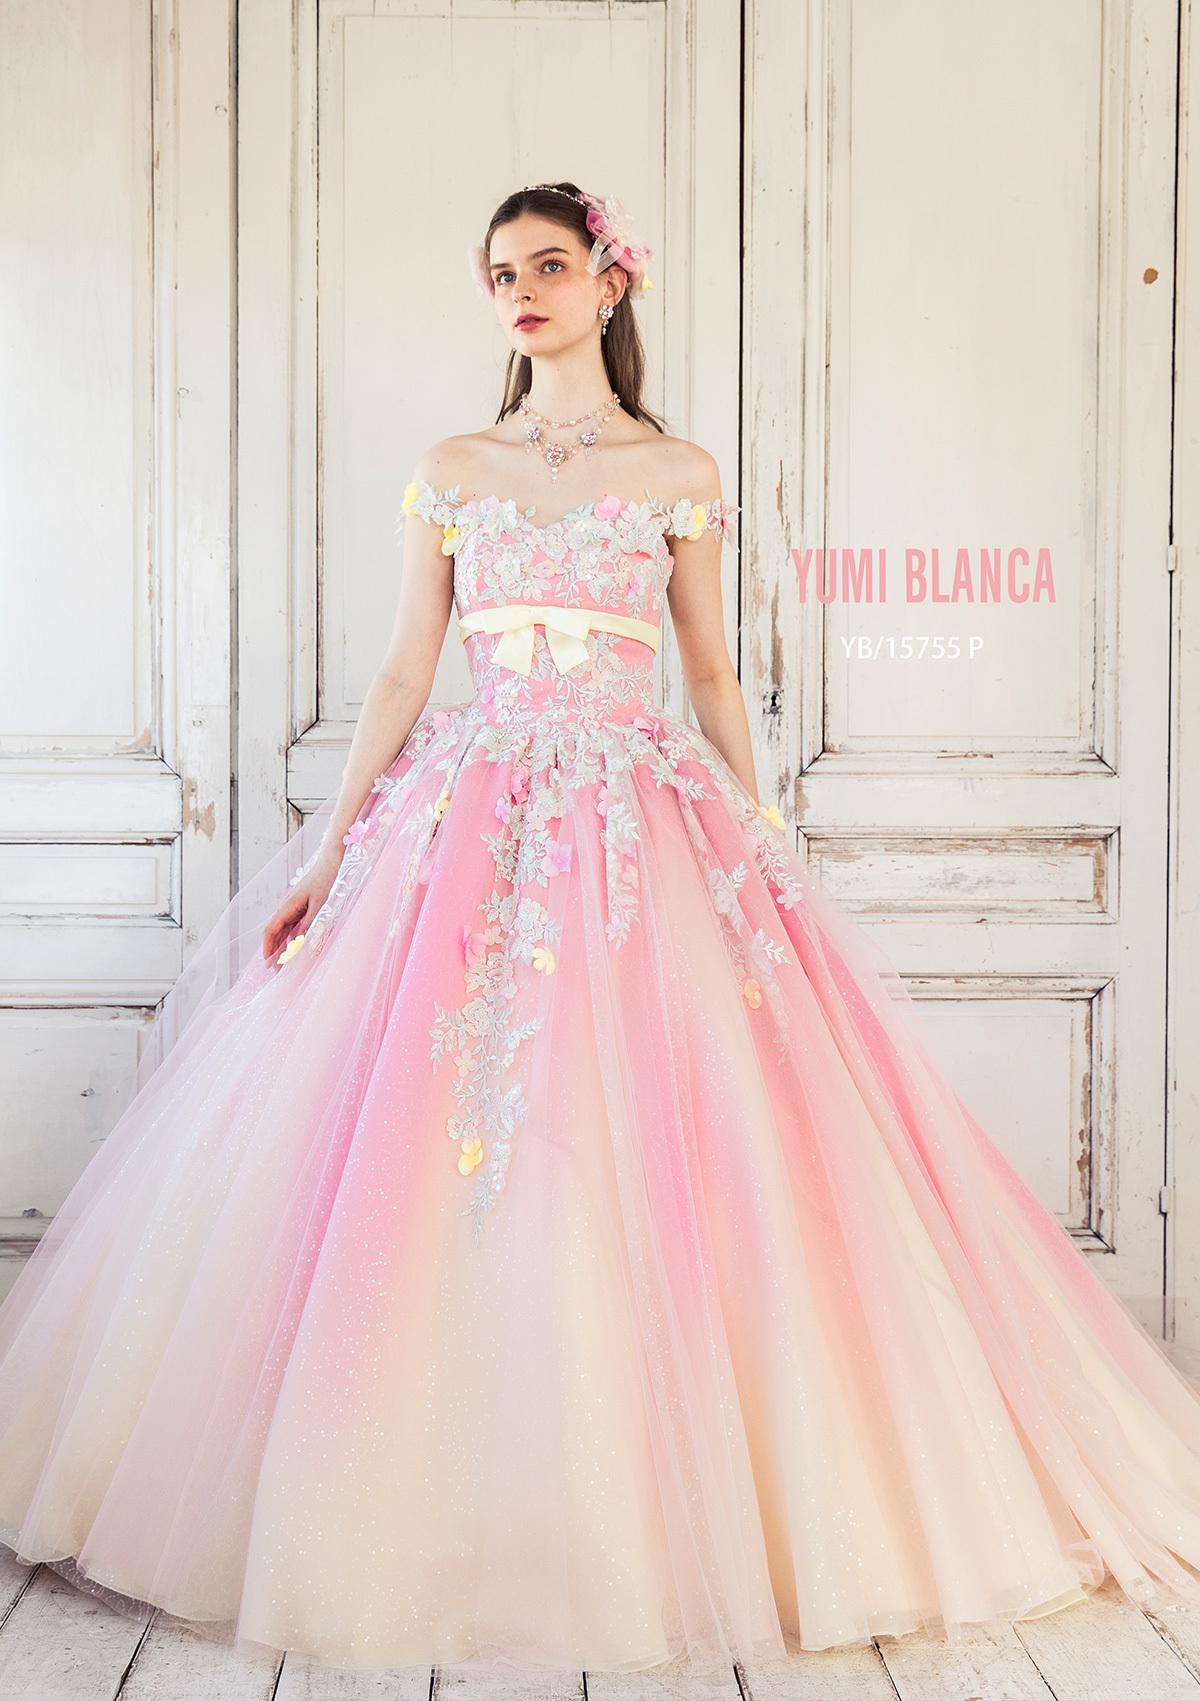 静岡市・富士市・沼津市のドレス専門店フィーノのカラードレス、桂由美YB-15755Pの画像1